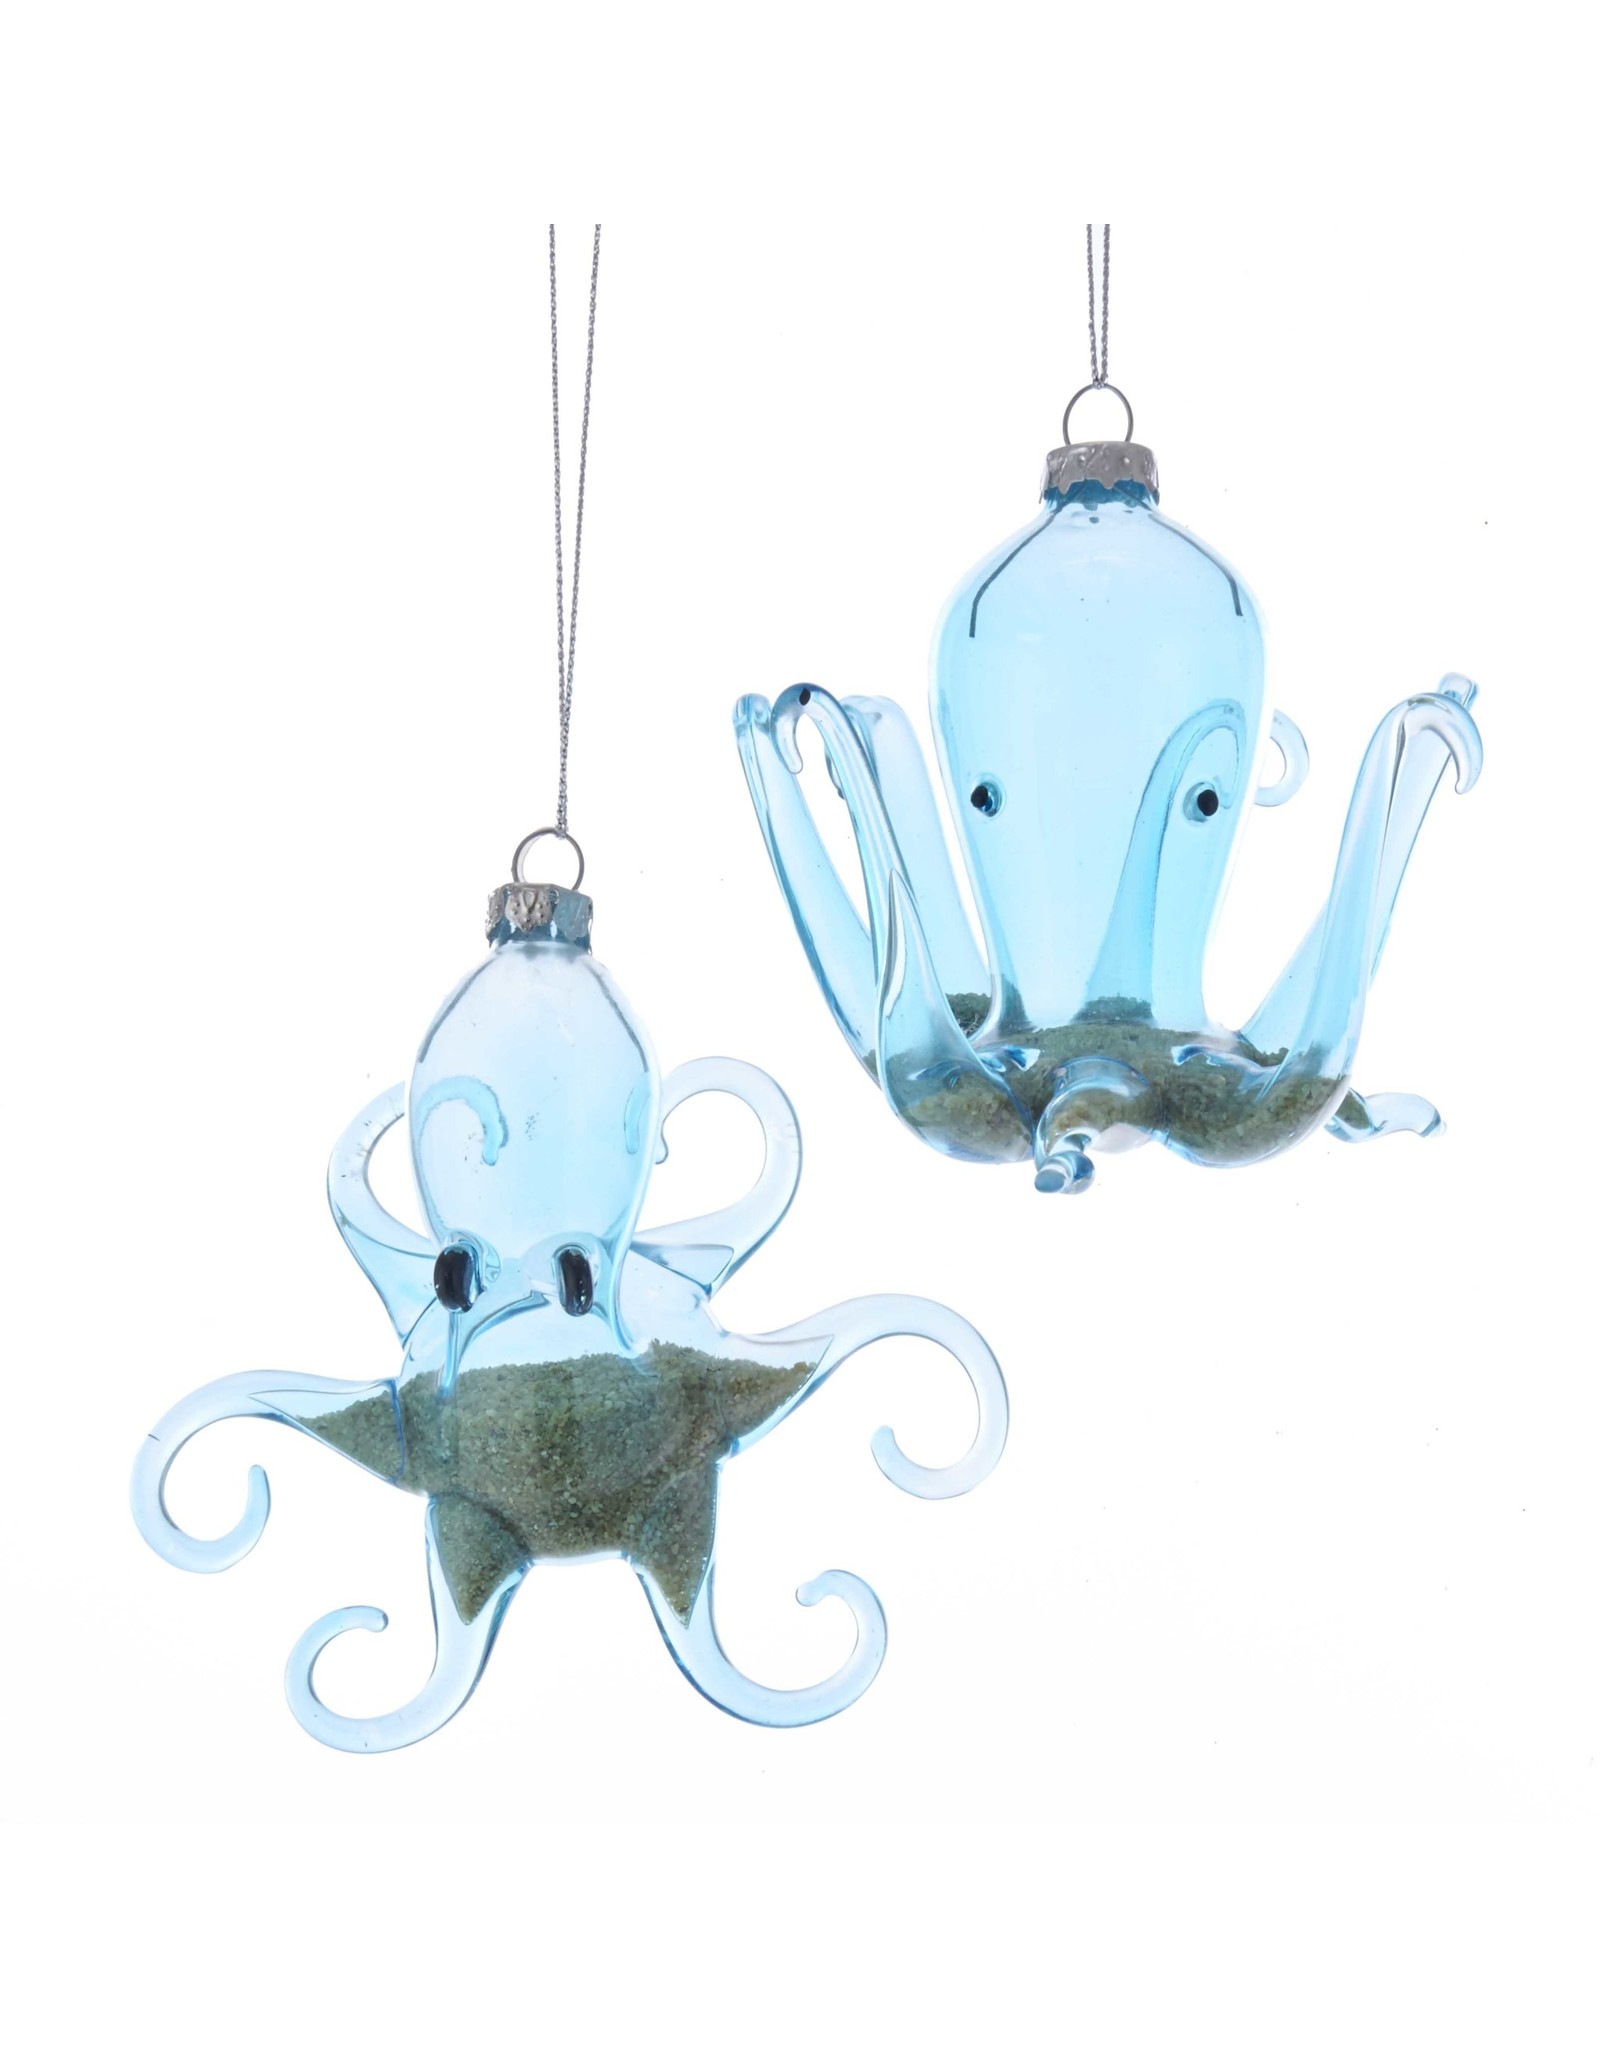 Kurt Adler Octopus Ornament Blue Glass w Beach Sand Inside 2 Assorted